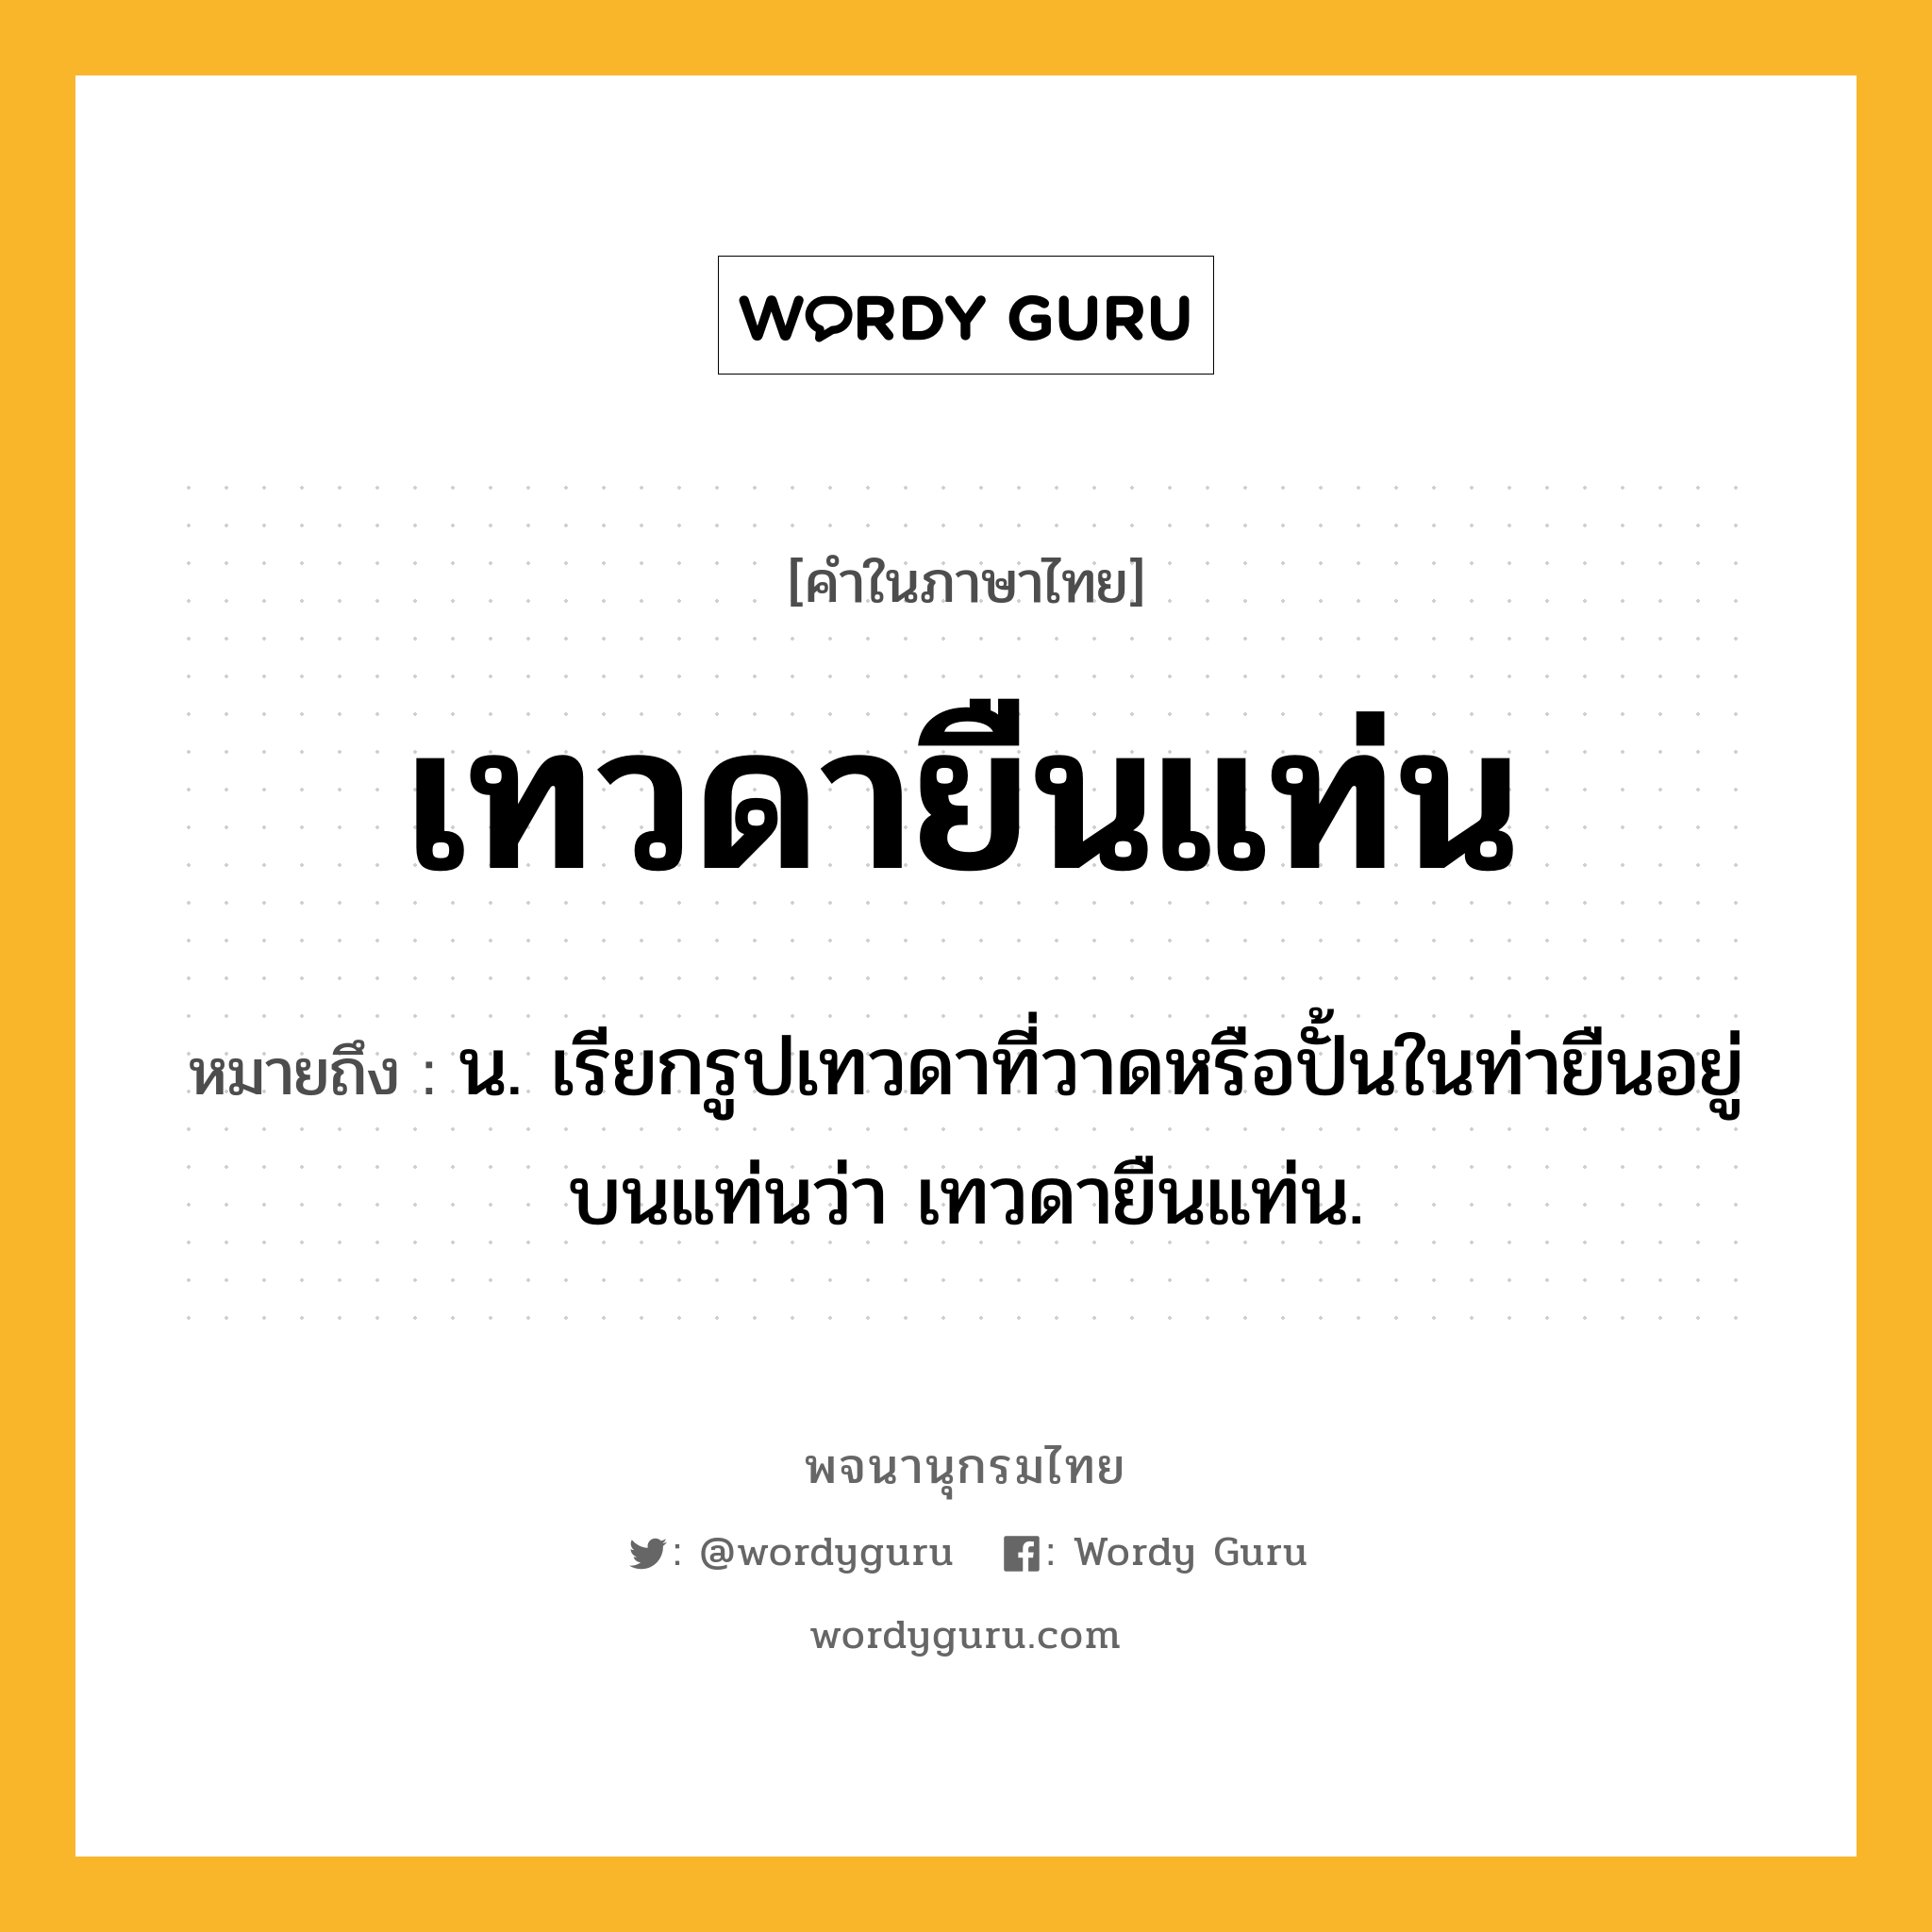 เทวดายืนแท่น หมายถึงอะไร?, คำในภาษาไทย เทวดายืนแท่น หมายถึง น. เรียกรูปเทวดาที่วาดหรือปั้นในท่ายืนอยู่บนแท่นว่า เทวดายืนแท่น.